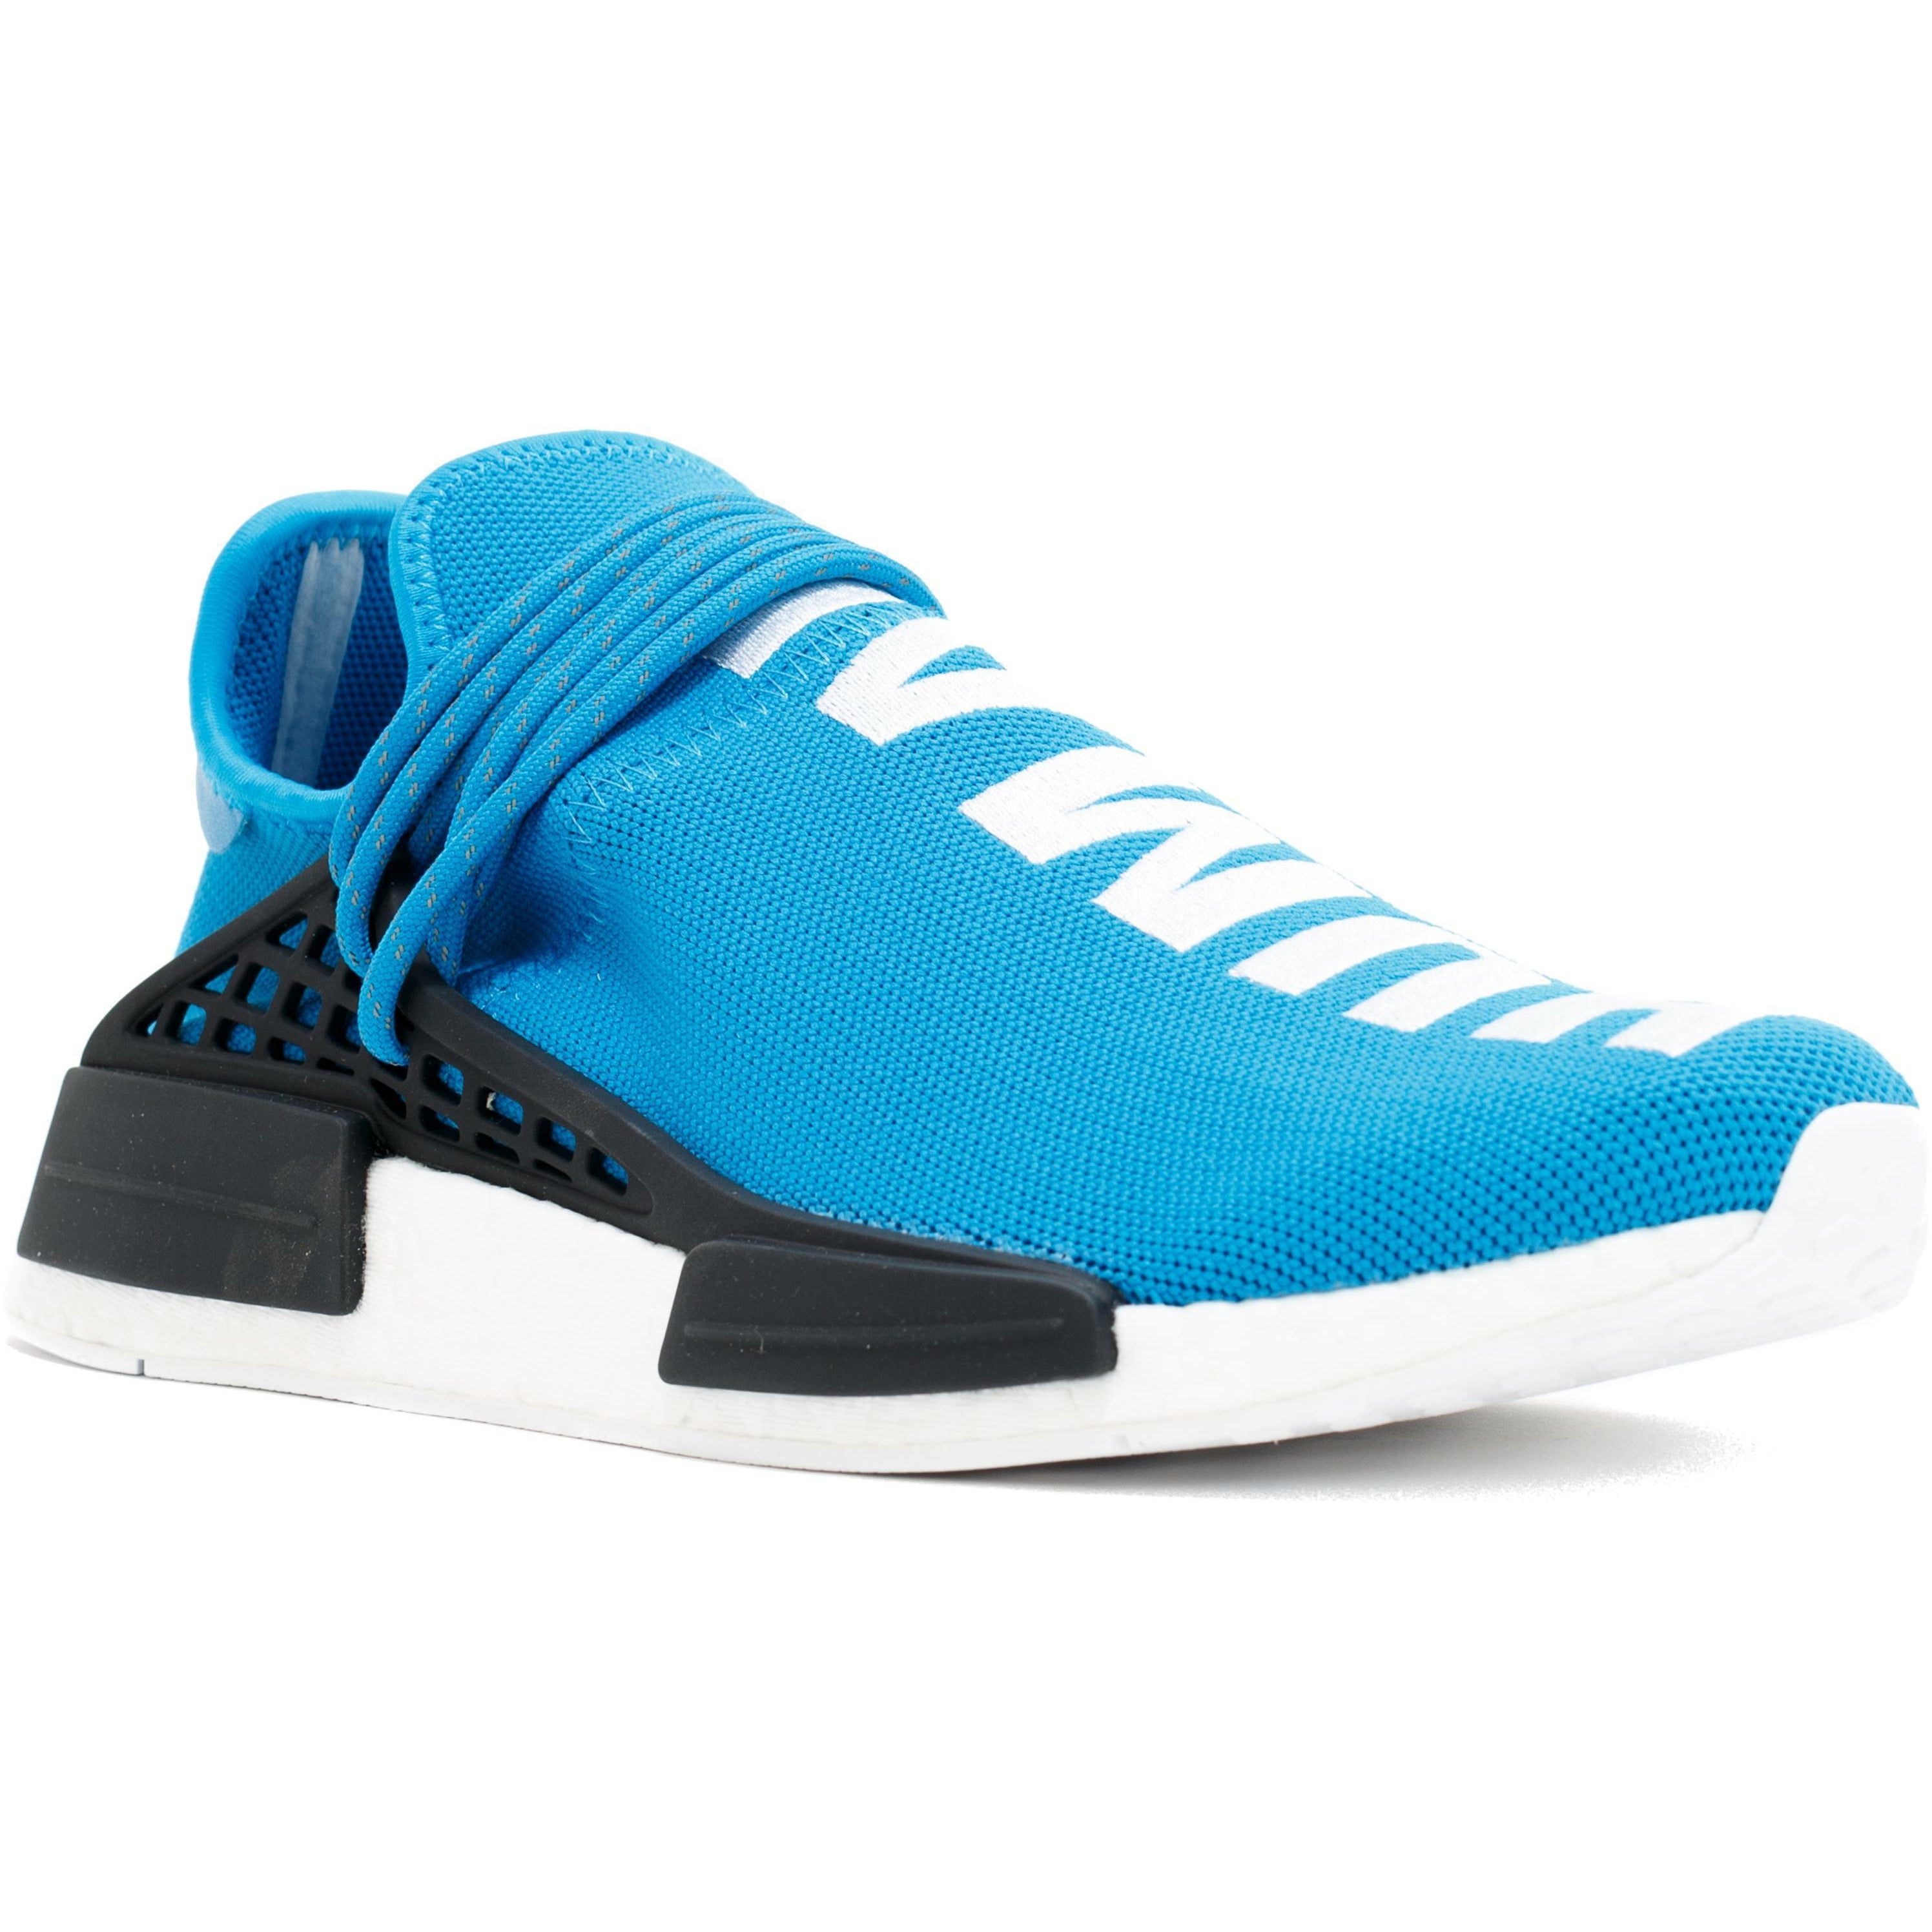 spand Anmelder indsats Pharrell Williams X Adidas Human Race OG "Light Blue" – mrsneaker